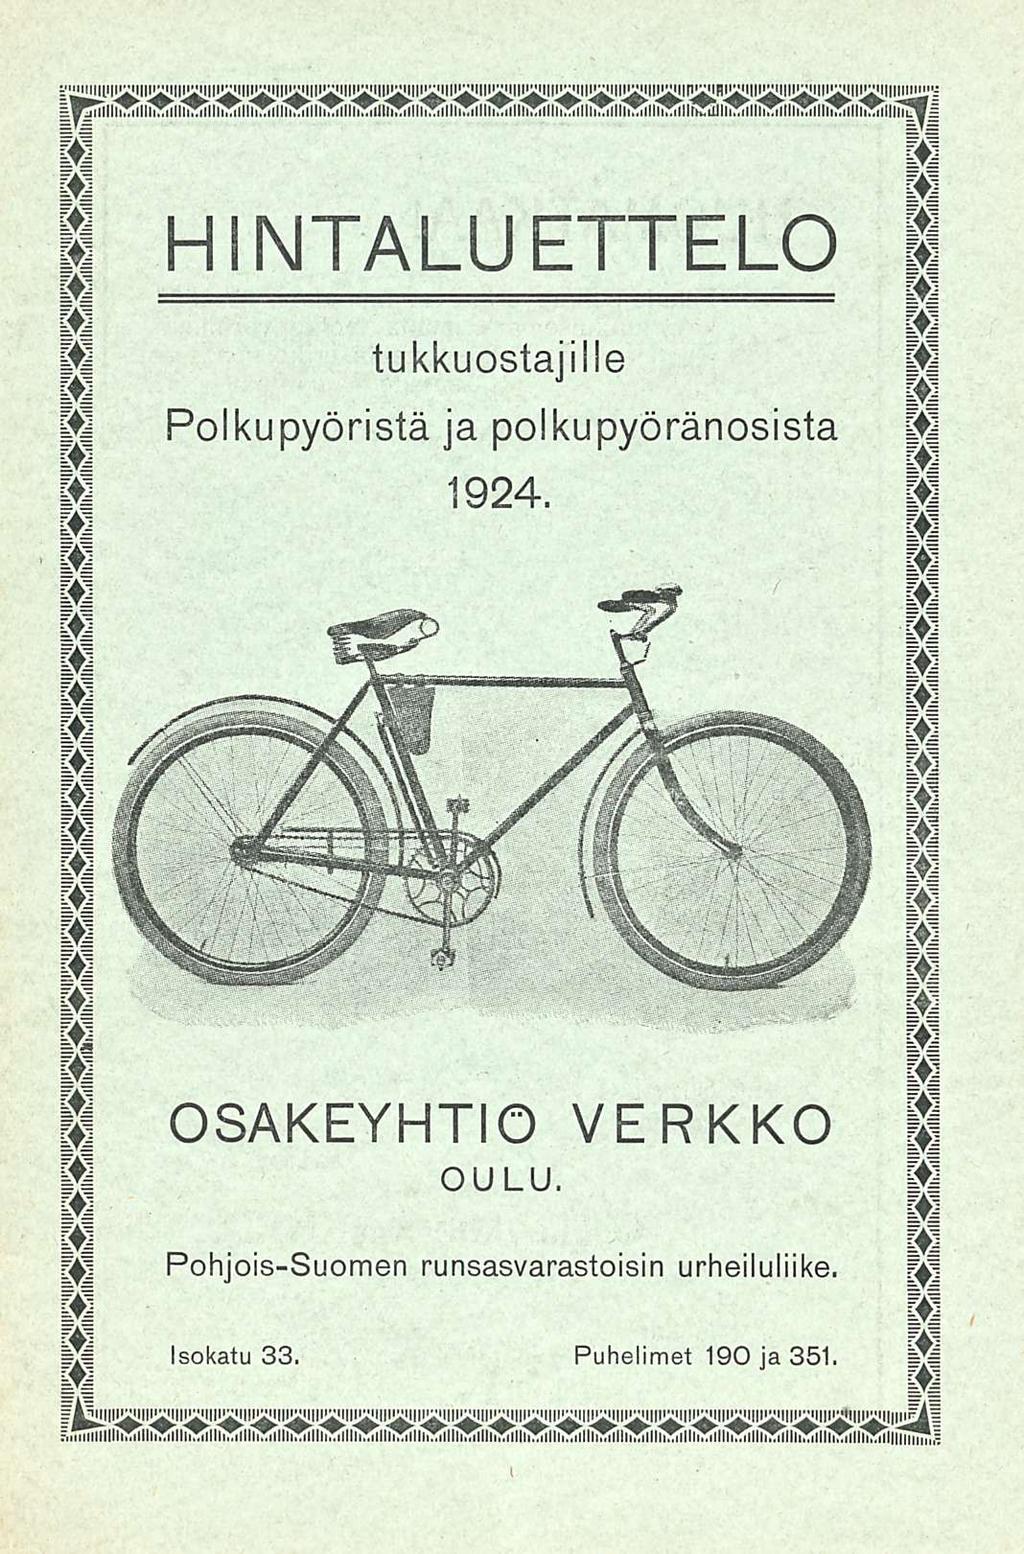 Hintaluettelo tukkuostajiile Polkupyöristä ja polkupyöränosista 1924 OSAKEYHTIÖ